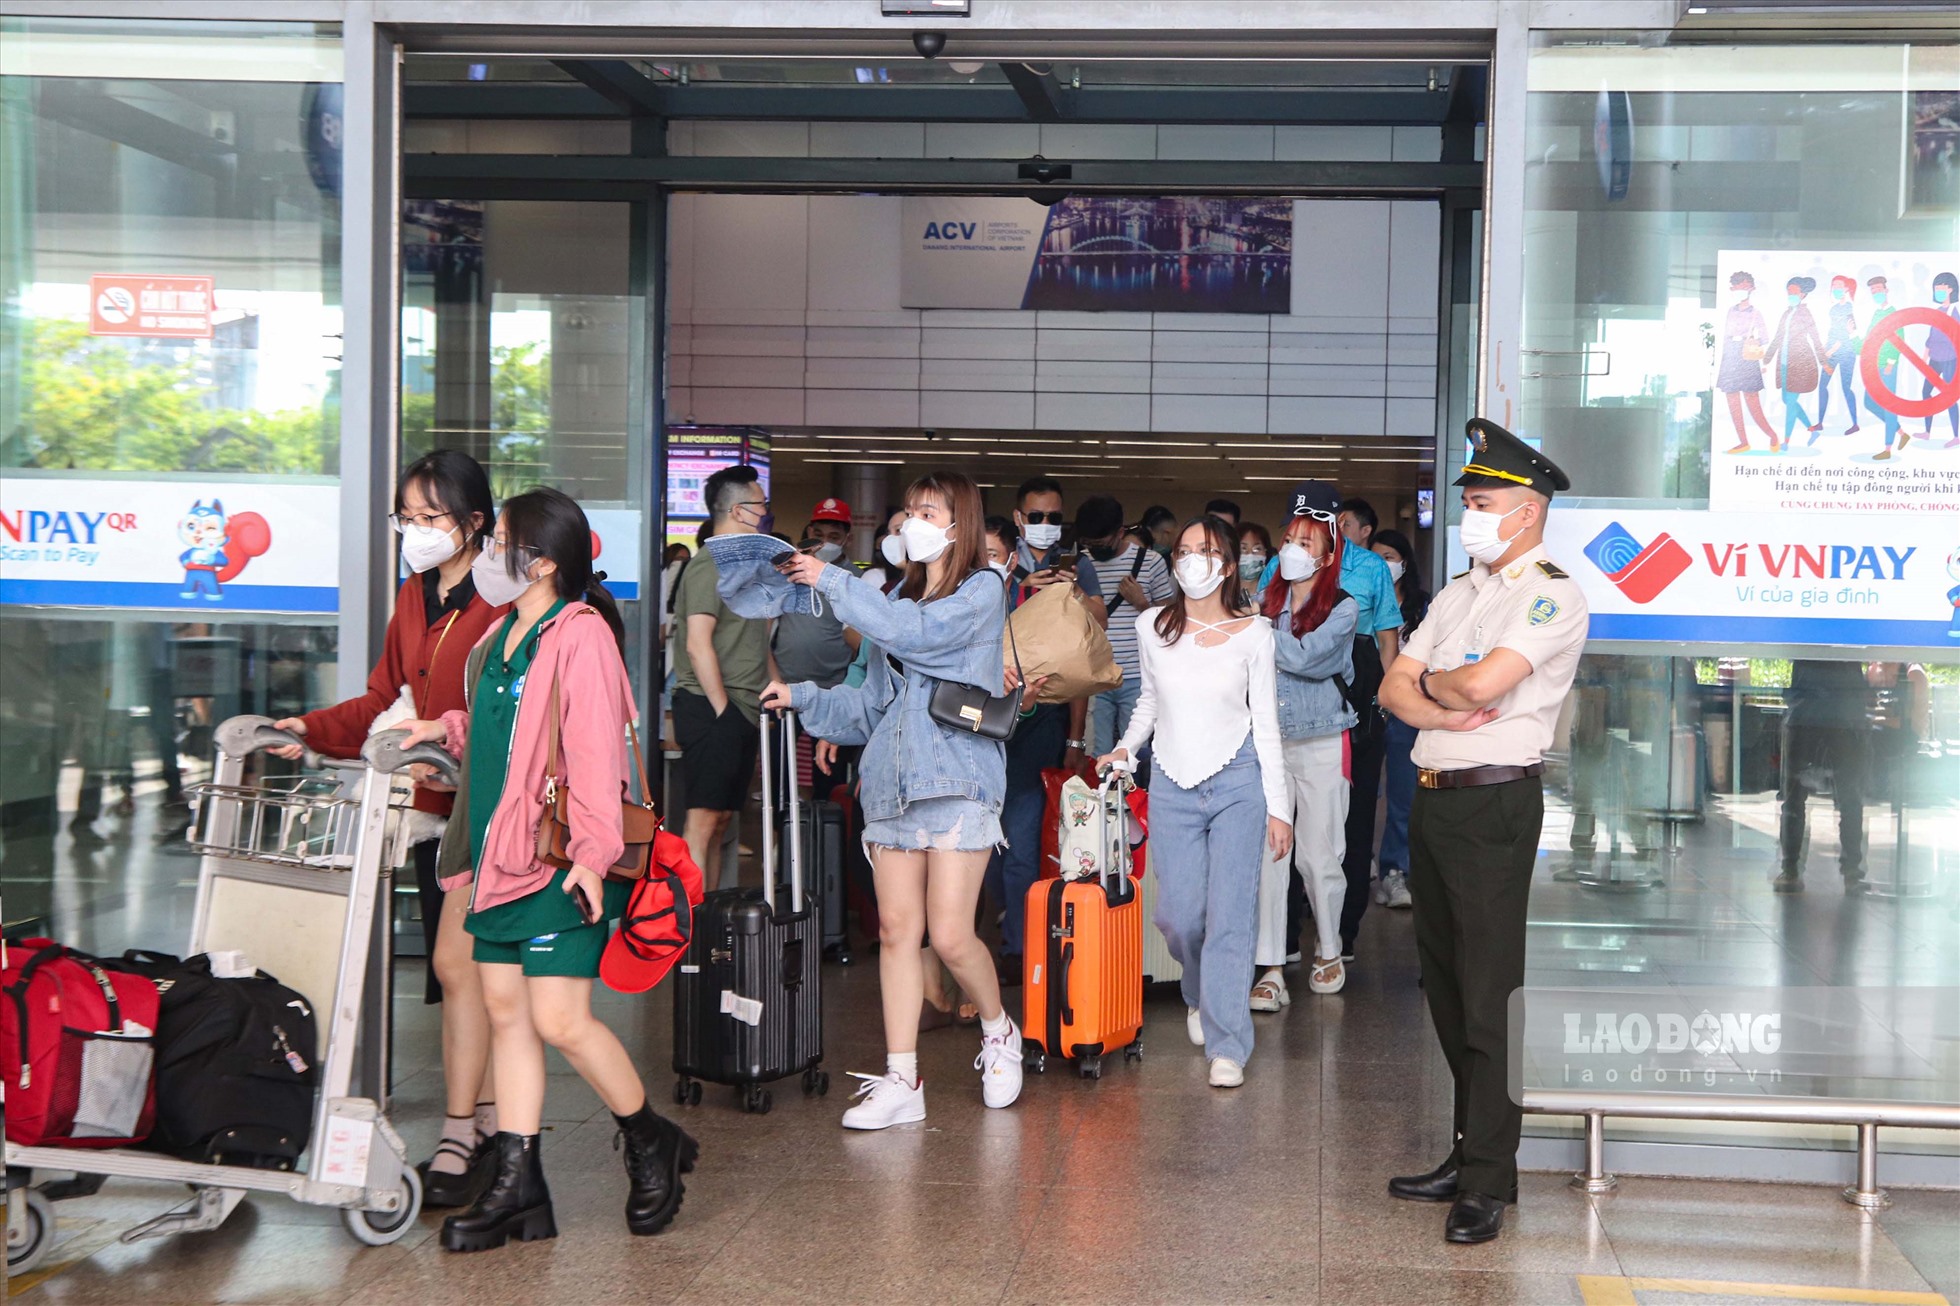 Mặc dù lượng khách tăng cao khi vào giai đoạn cao điểm hè song không xảy ra tình trạng quá tải tại sân bay Đà Nẵng. Khách du lịch dễ dàng di chuyển dù nhiều du khách mang theo nhiều hành lý